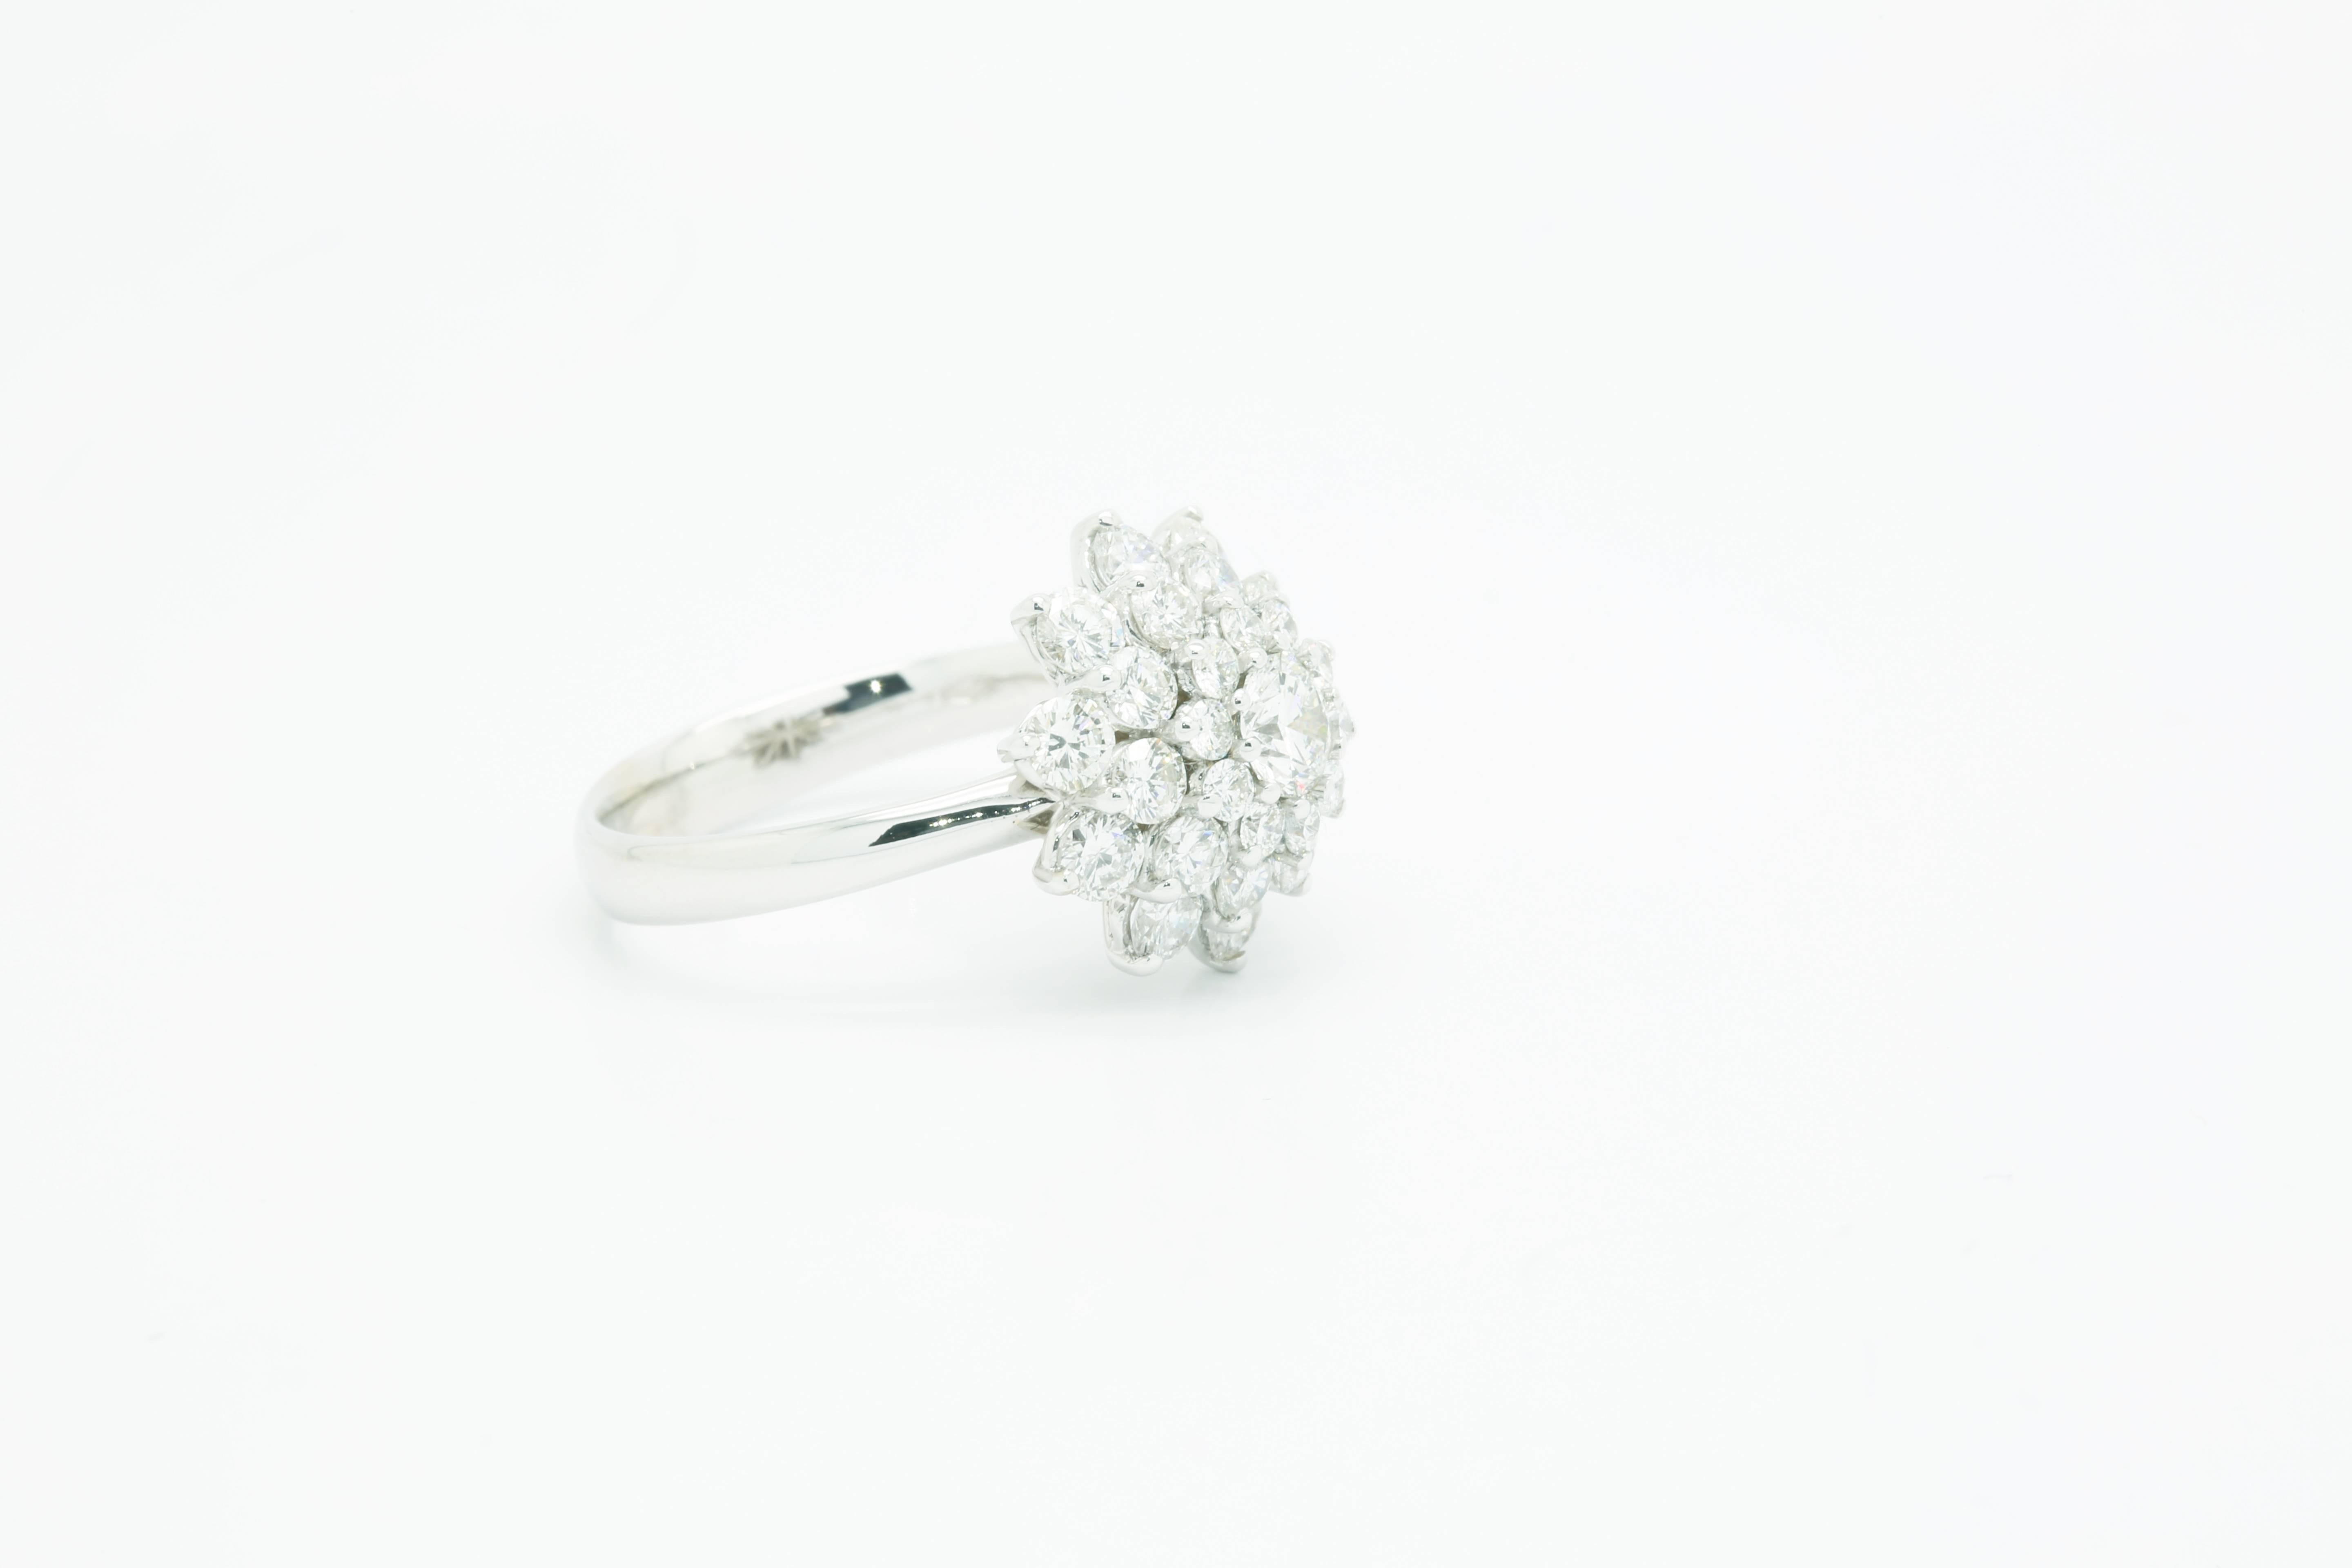 FERRUCCI 2,13 Karat weiße Diamanten Flower Cluster in einem handgefertigten Ring aus 18k Weißgold
Dieser Ring ist eine Größe 7, kostenlose Größenbestimmung bei Bestellung vor dem Versand.

